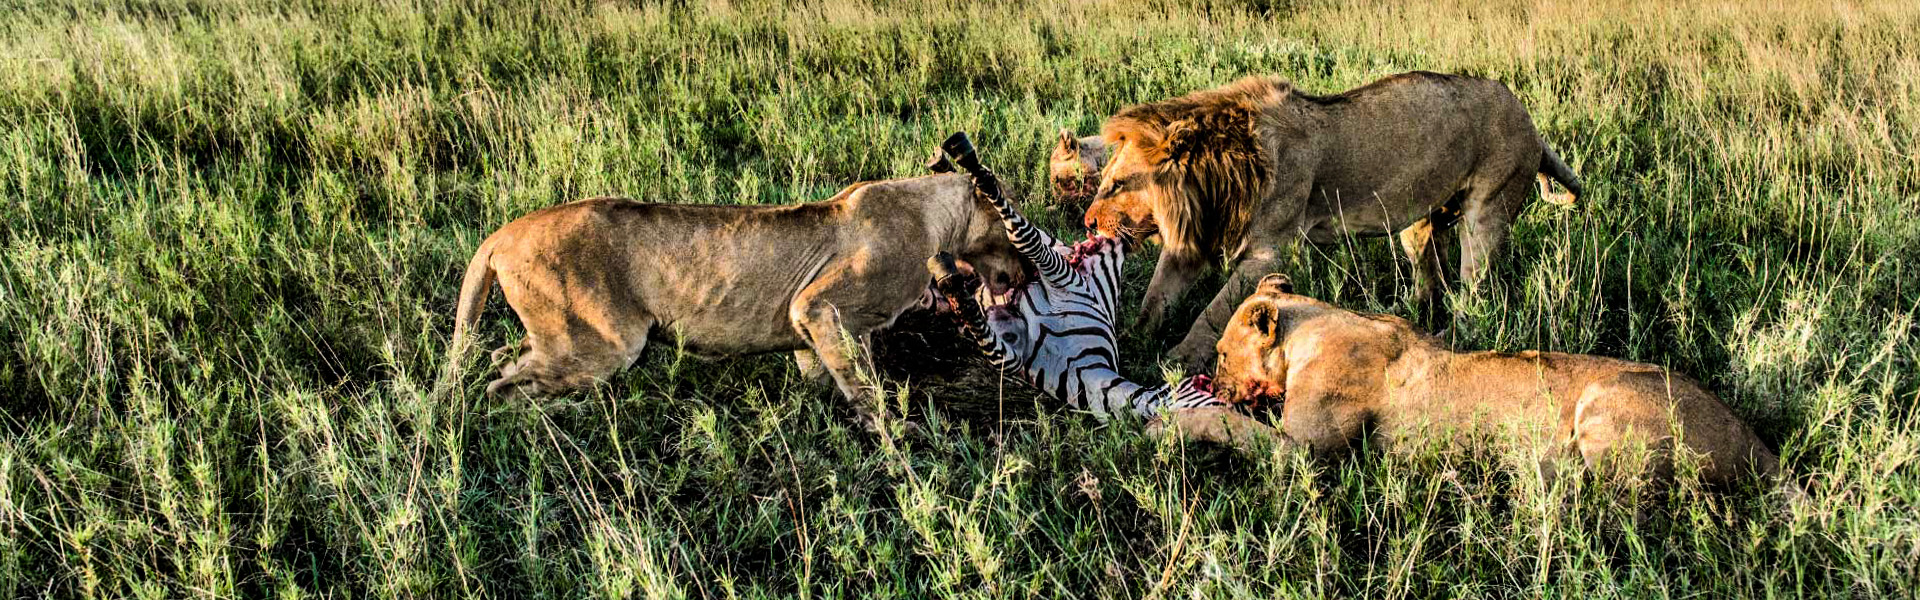 Joining Safari in Tanzania | Group Joining Safaris in Tanzania